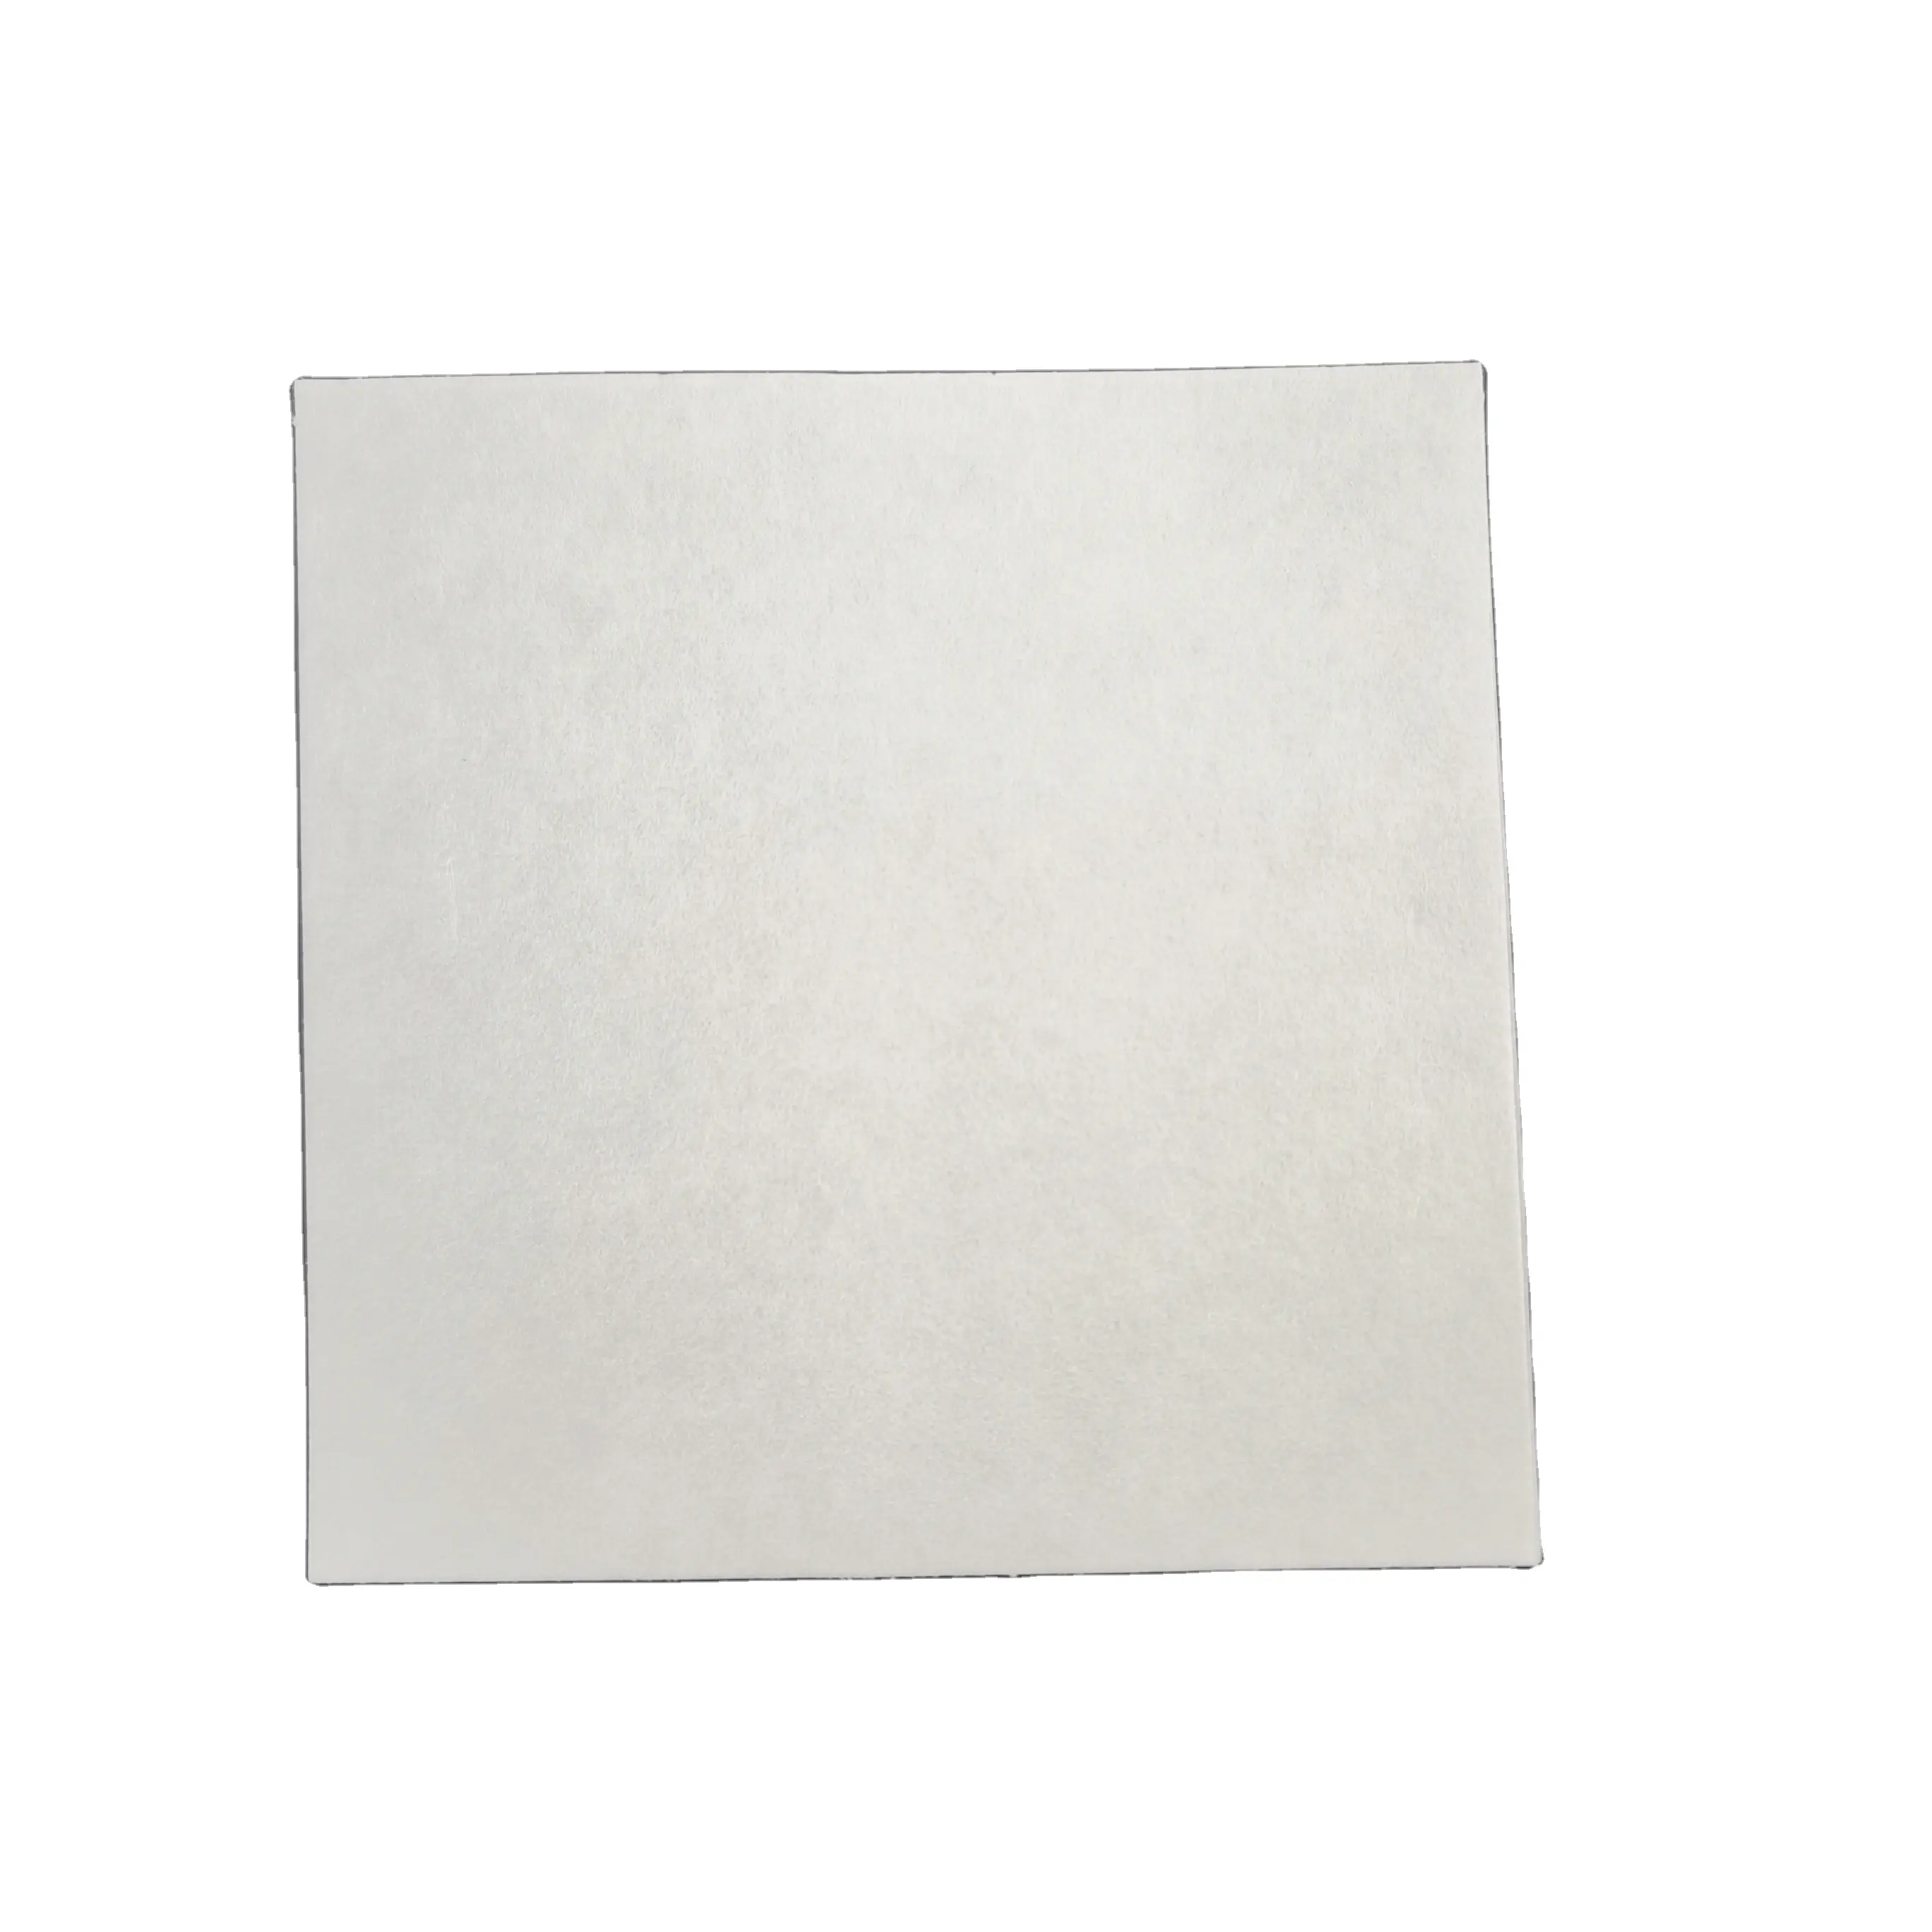 Фабричный производитель оптовая цена 60 см 60 см лабораторная фильтровальная бумага качественная фильтровальная бумага